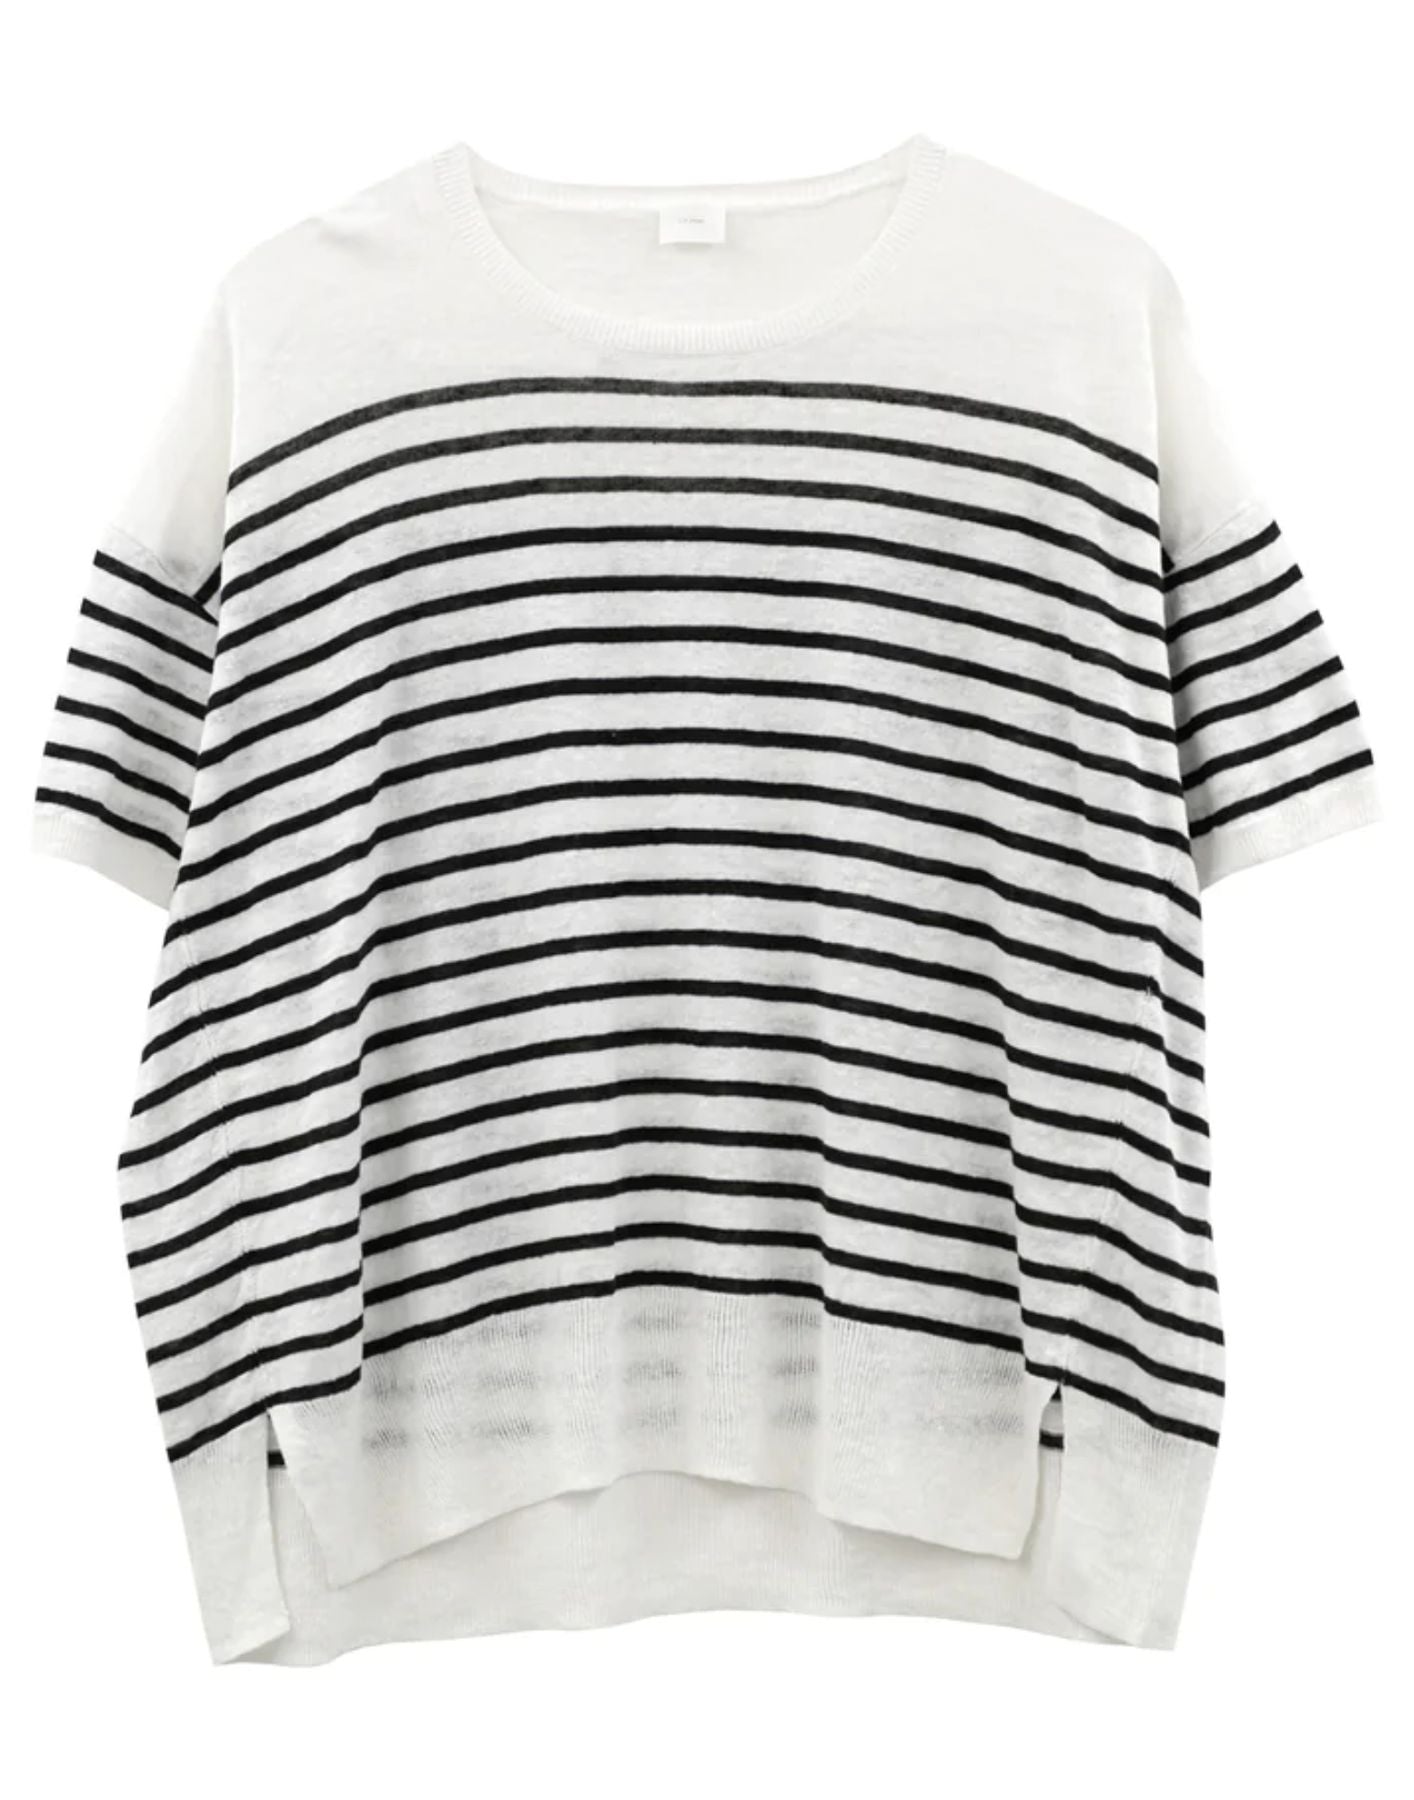 Camiseta para mujer CT24131 White/Grey C.T. placentero